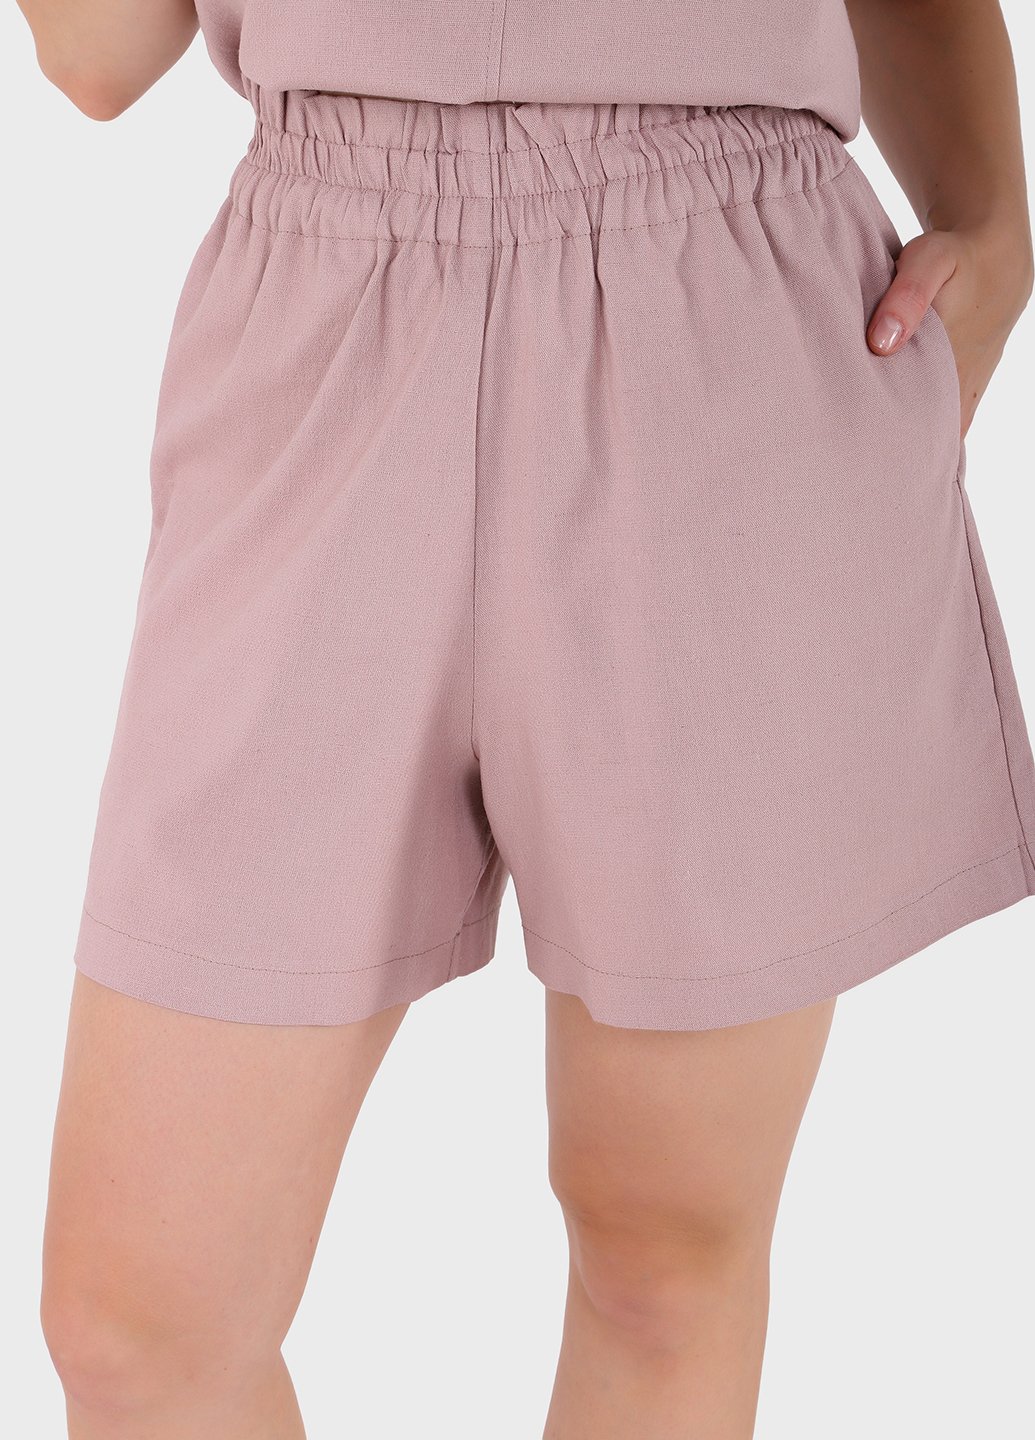 Купить Льняные шорты женские бермуды пудрового цвета Merlini Турин 300000046, размер 42-44 в интернет-магазине